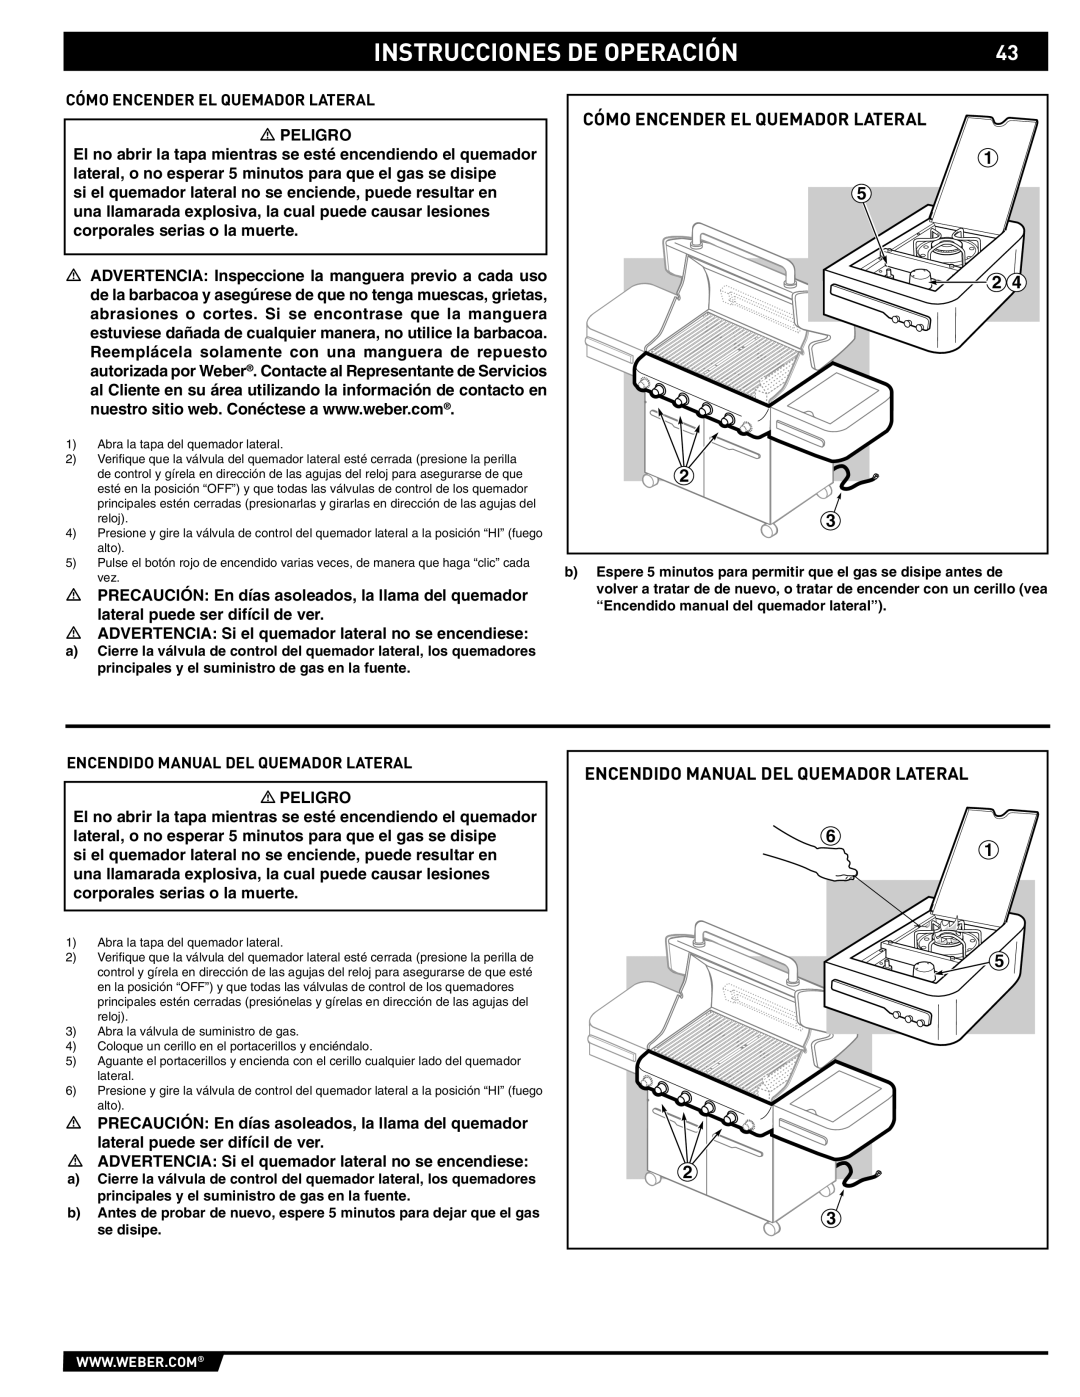 Weber 89561 manual Cómo Encender EL Quemador Lateral, Encendido Manual DEL Quemador Lateral 